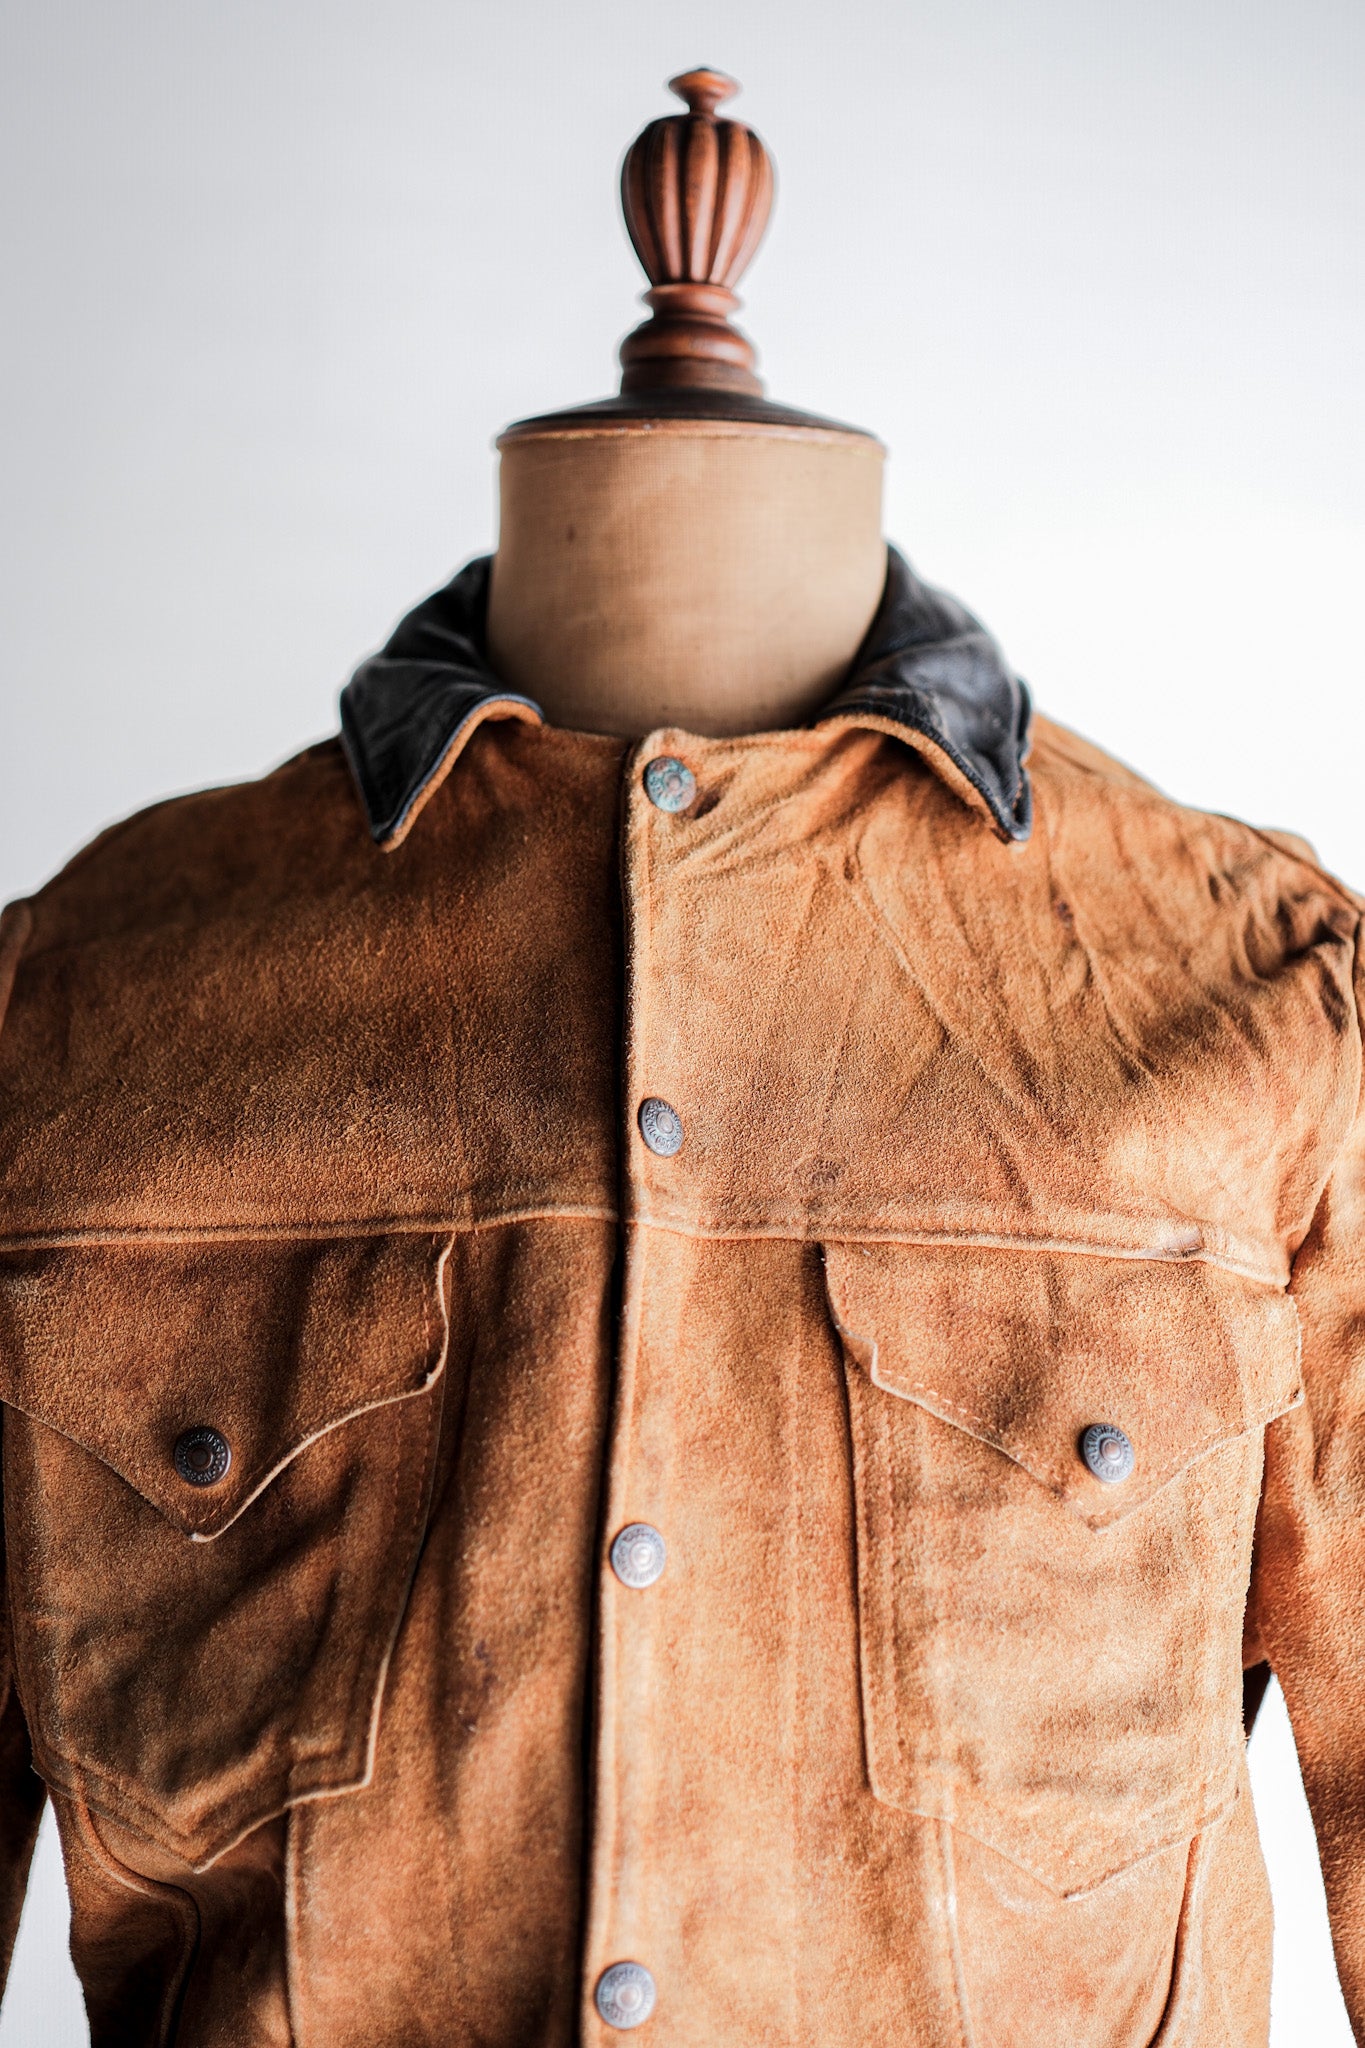 [~ 50's] Vintage Levi's Suede Leather Jacket "Short Horn"